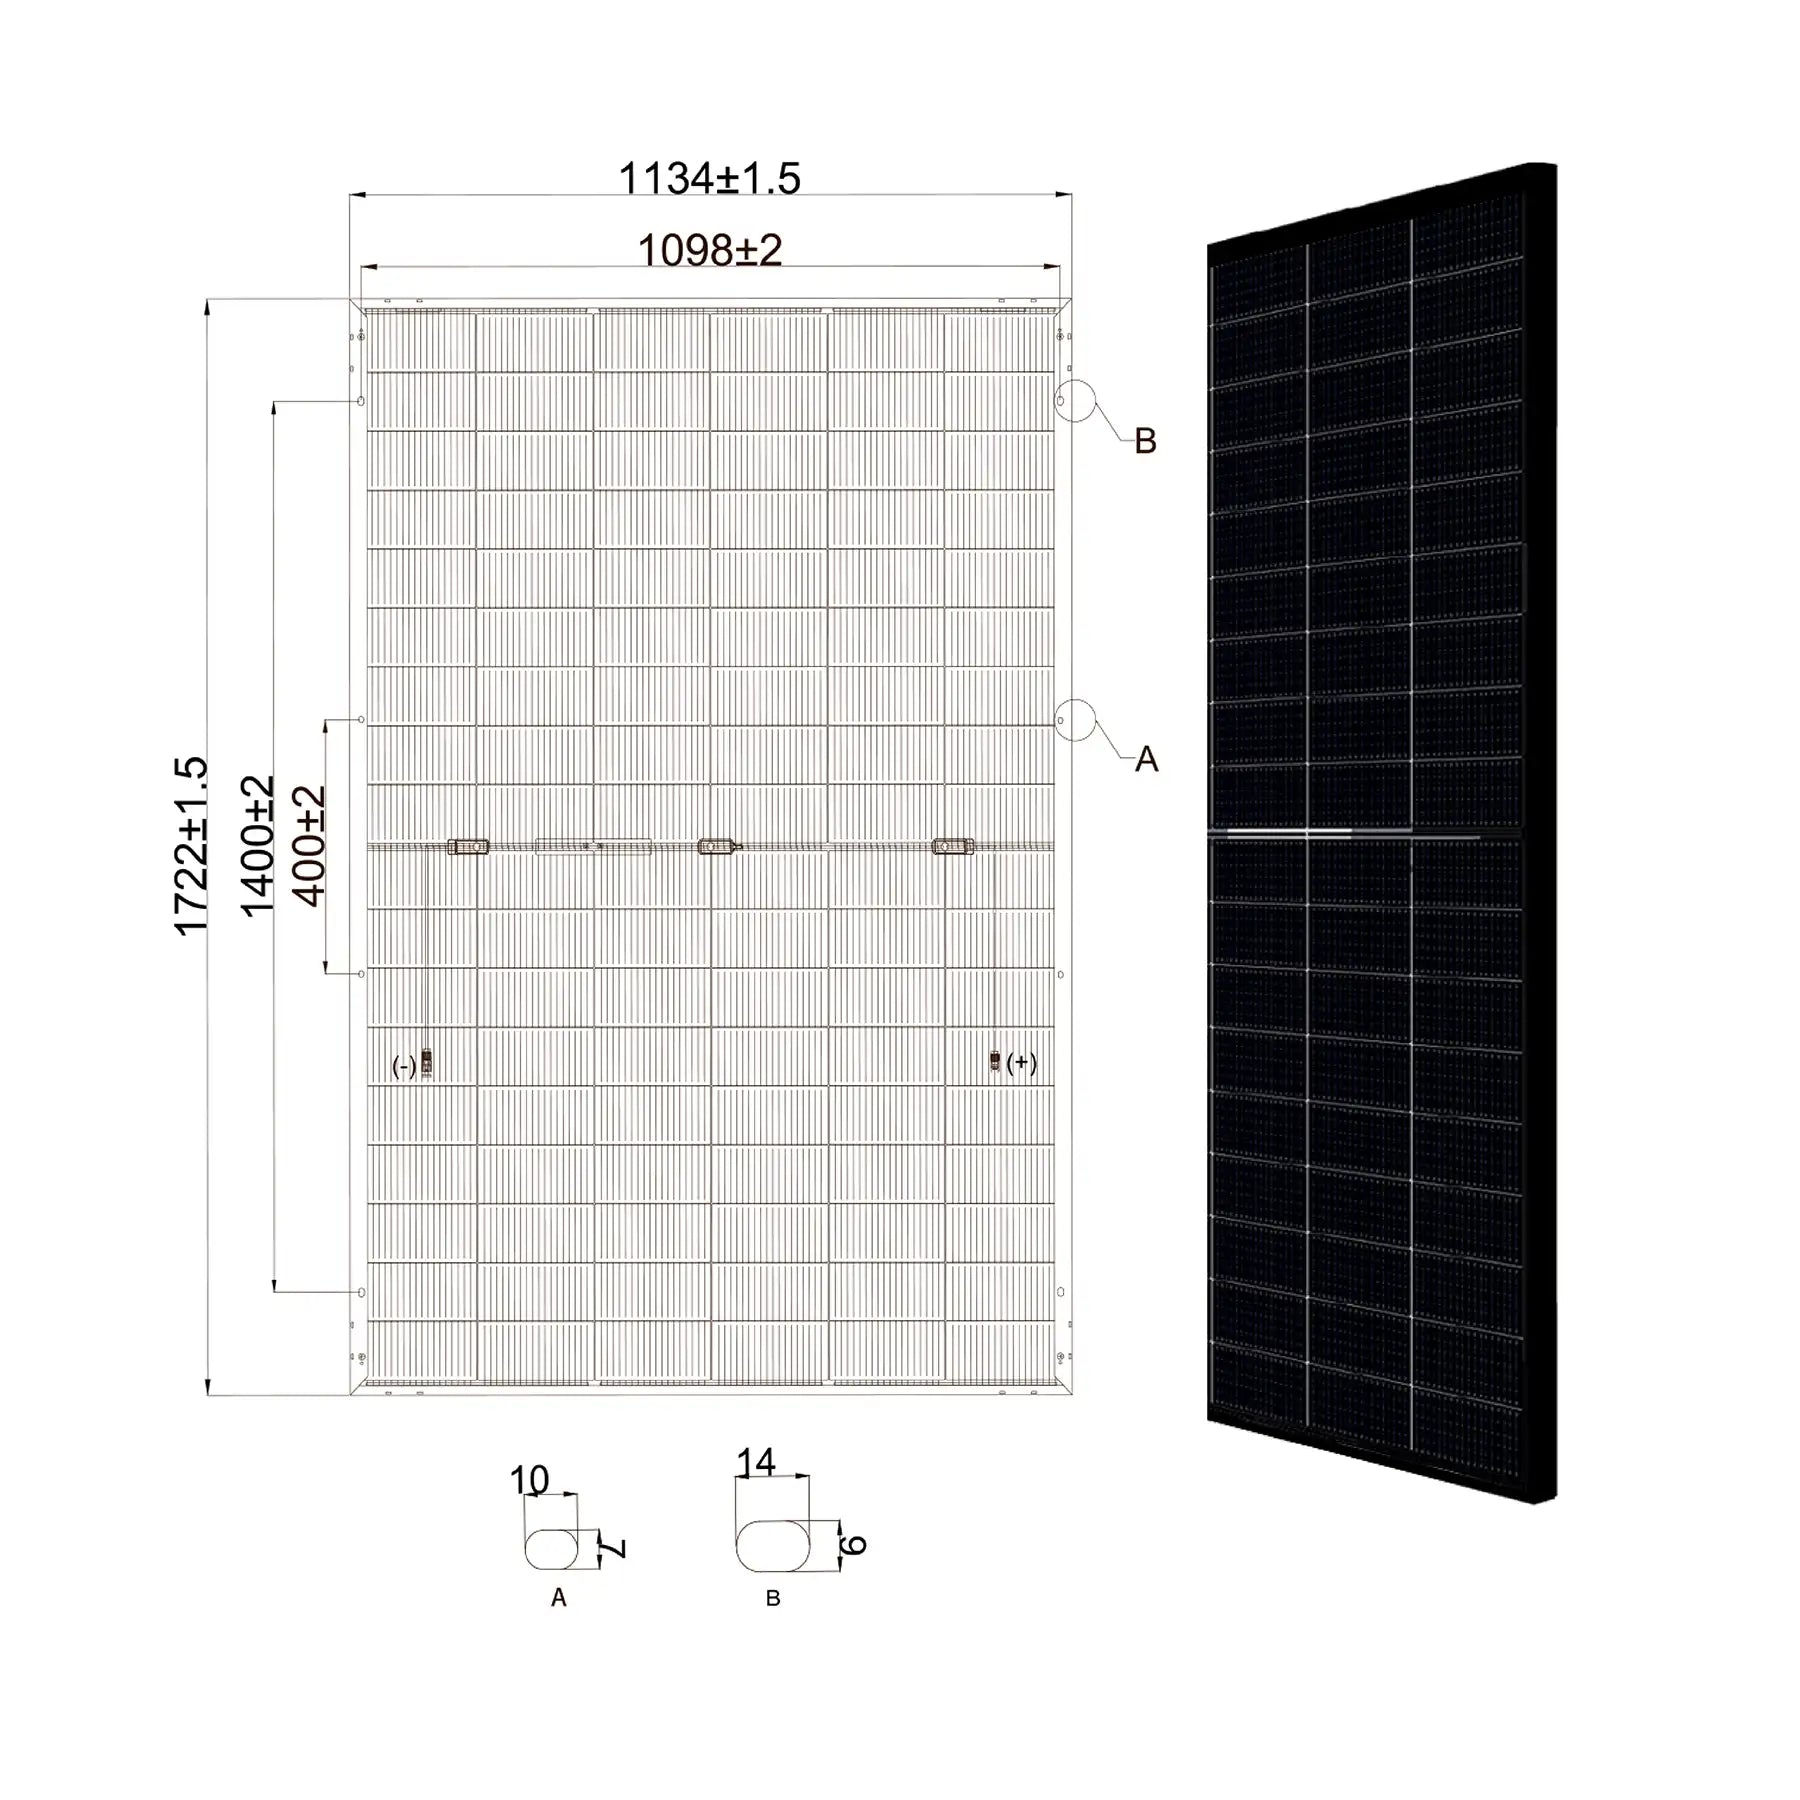 MSMDxxxM10 HJT108DSN 430W módulo solar vidrio-vidrio bifacial HJT